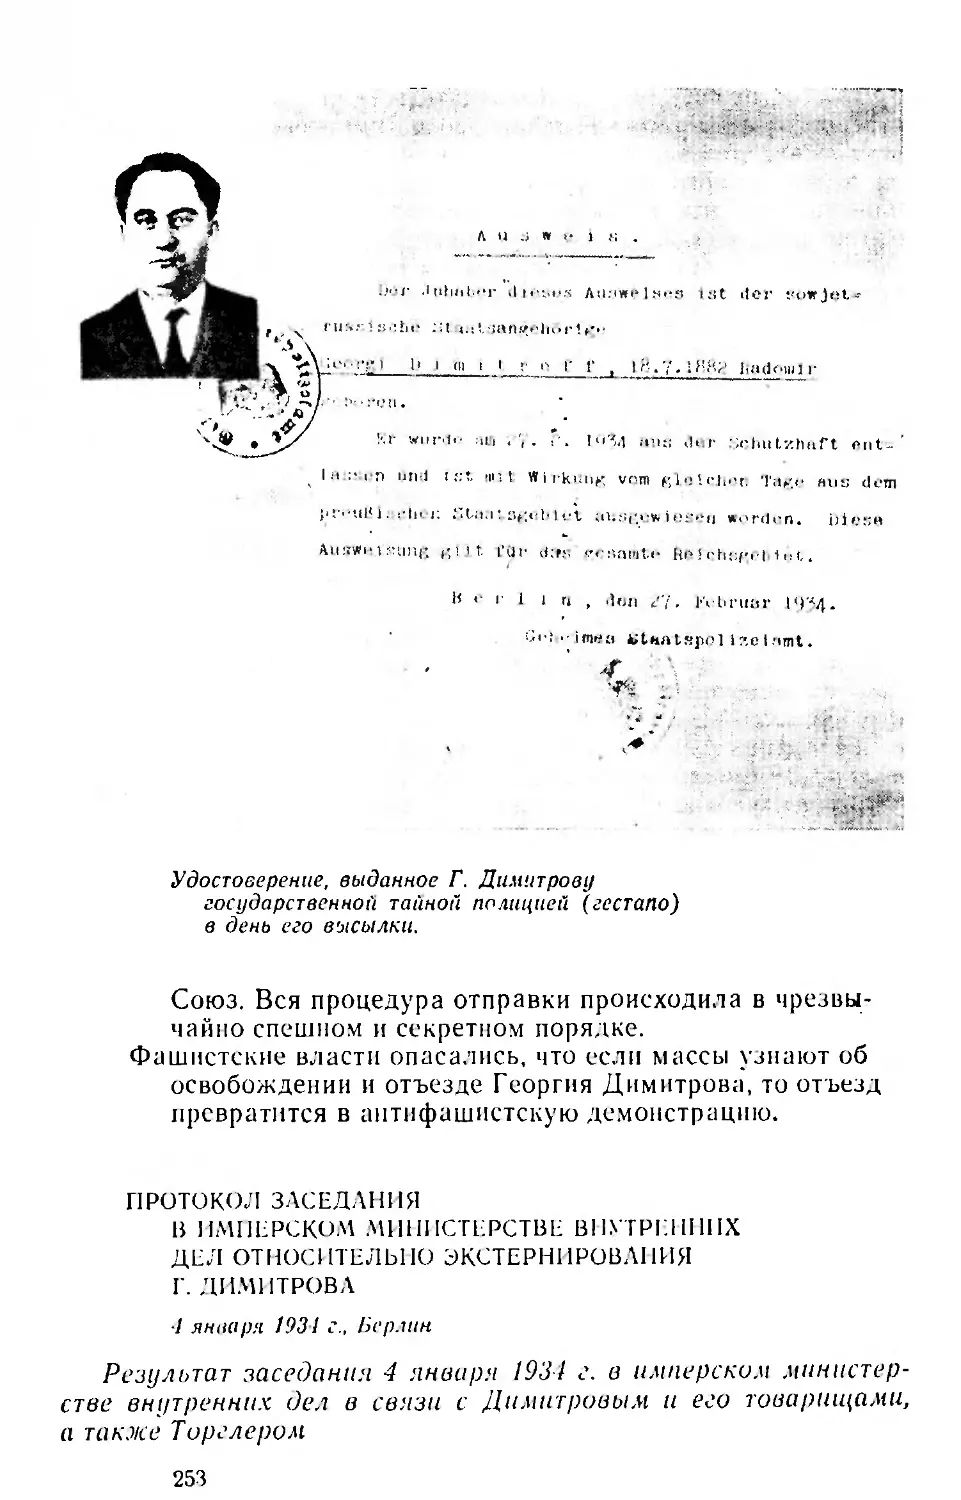 Протокол заседания в Имперском министерстве внутренних дел относительно экстернирования Георгия Димитрова. 4 января 1934 г